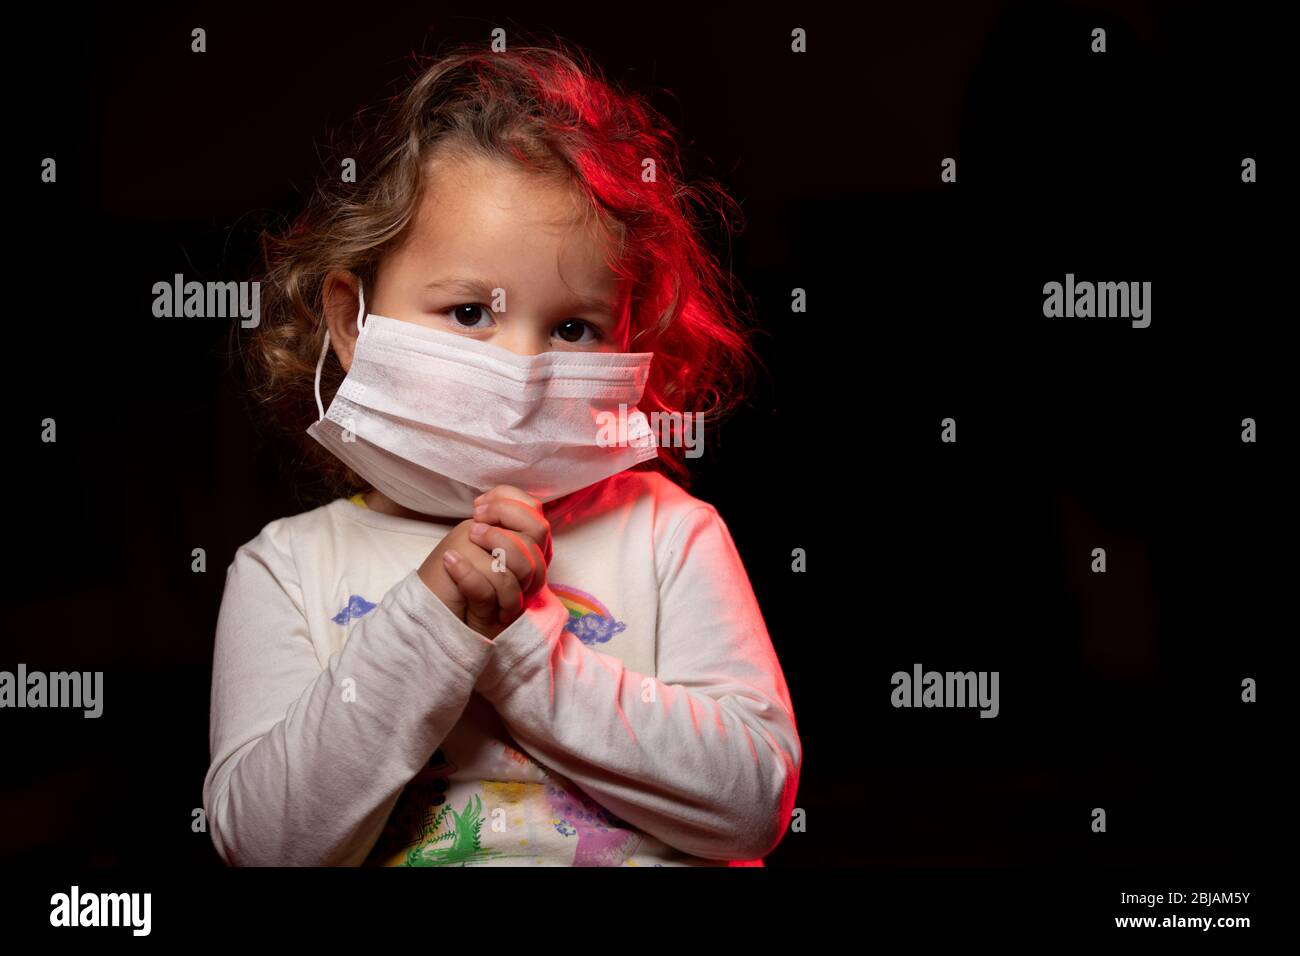 Fille portant un masque de protection contre la pandémie de coronavirus de Covid-19. Elle prie Dieu pour un traitement et de l'aide. Espace de copie. Banque D'Images